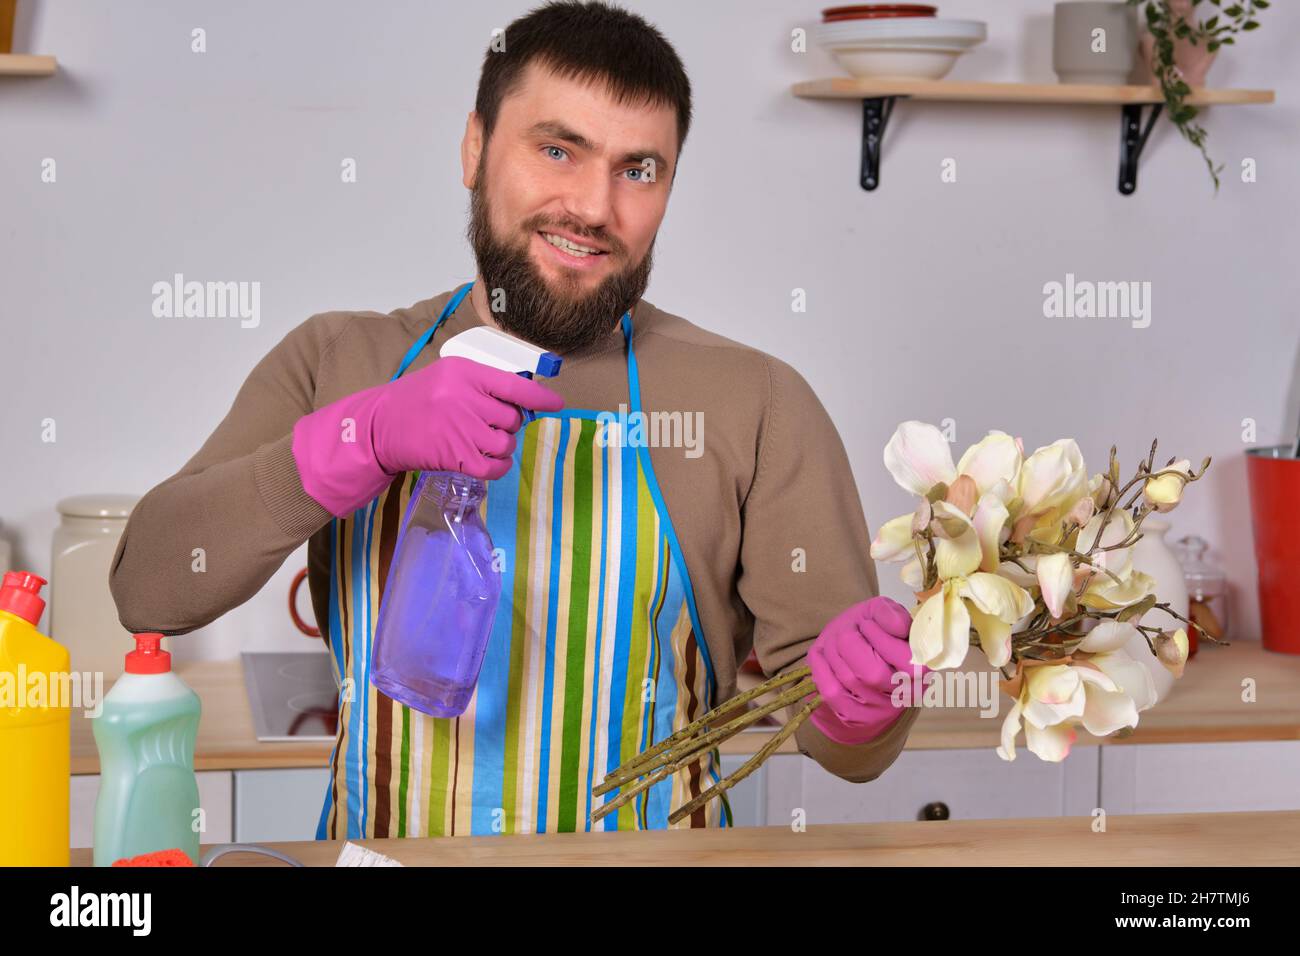 Junger, hübscher bärtiger Mann in der Küche zeigt alle seine Reinigungskräfte - Waschmittel, Bürsten, Sprays. Er denkt, er sei bereit für eine echte Reinigung Stockfoto